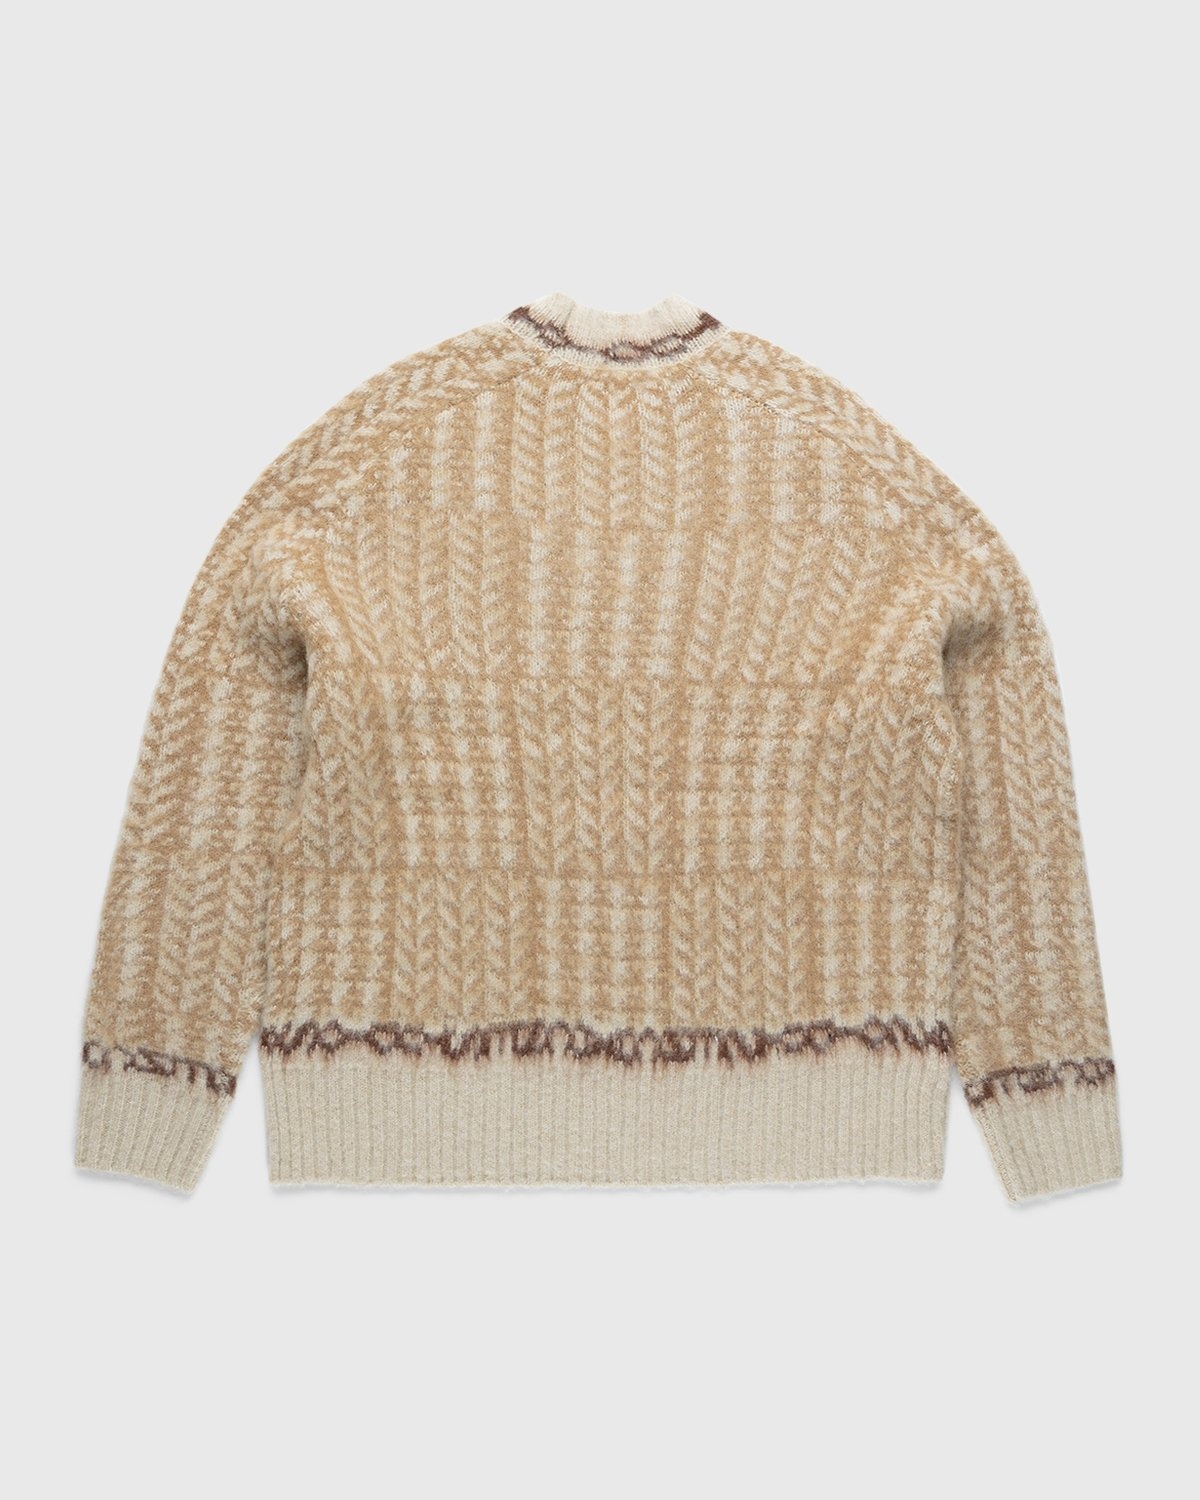 Acne Studios – Knit Sweater Beige - Knitwear - Beige - Image 2